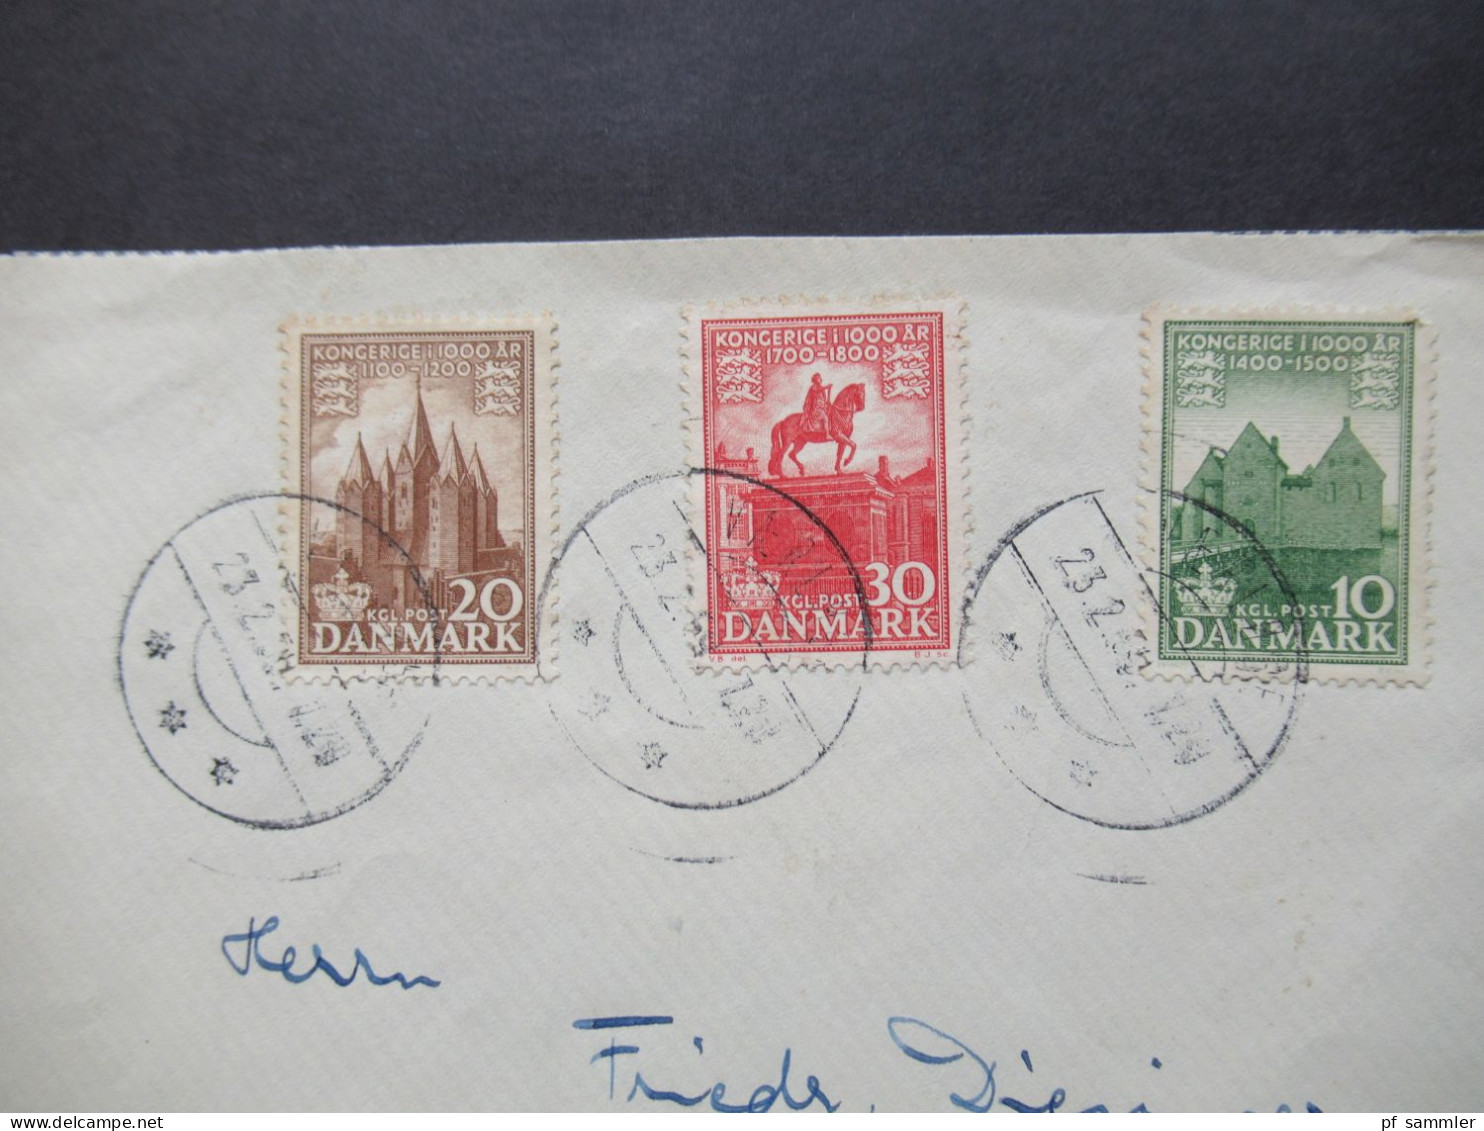 Dänemark 1953 / 55 1000 Jahre Königreich Dänemark MiF Nach Brebach Saar / Saarland Gesendet - Briefe U. Dokumente